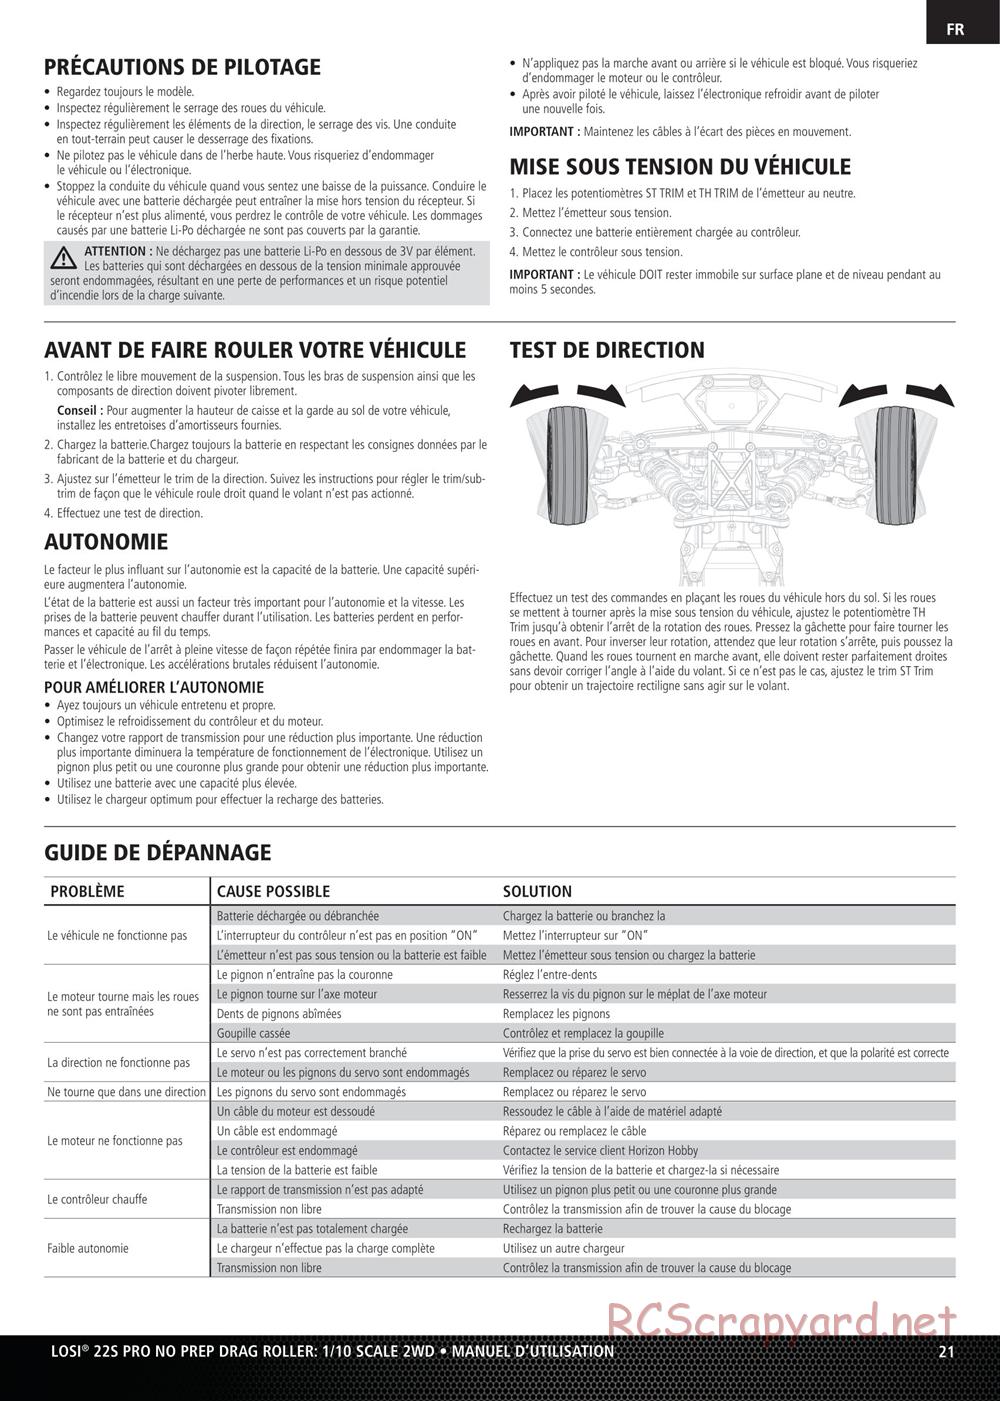 Team Losi - No Prep Drag Roller - Manual - Page 21